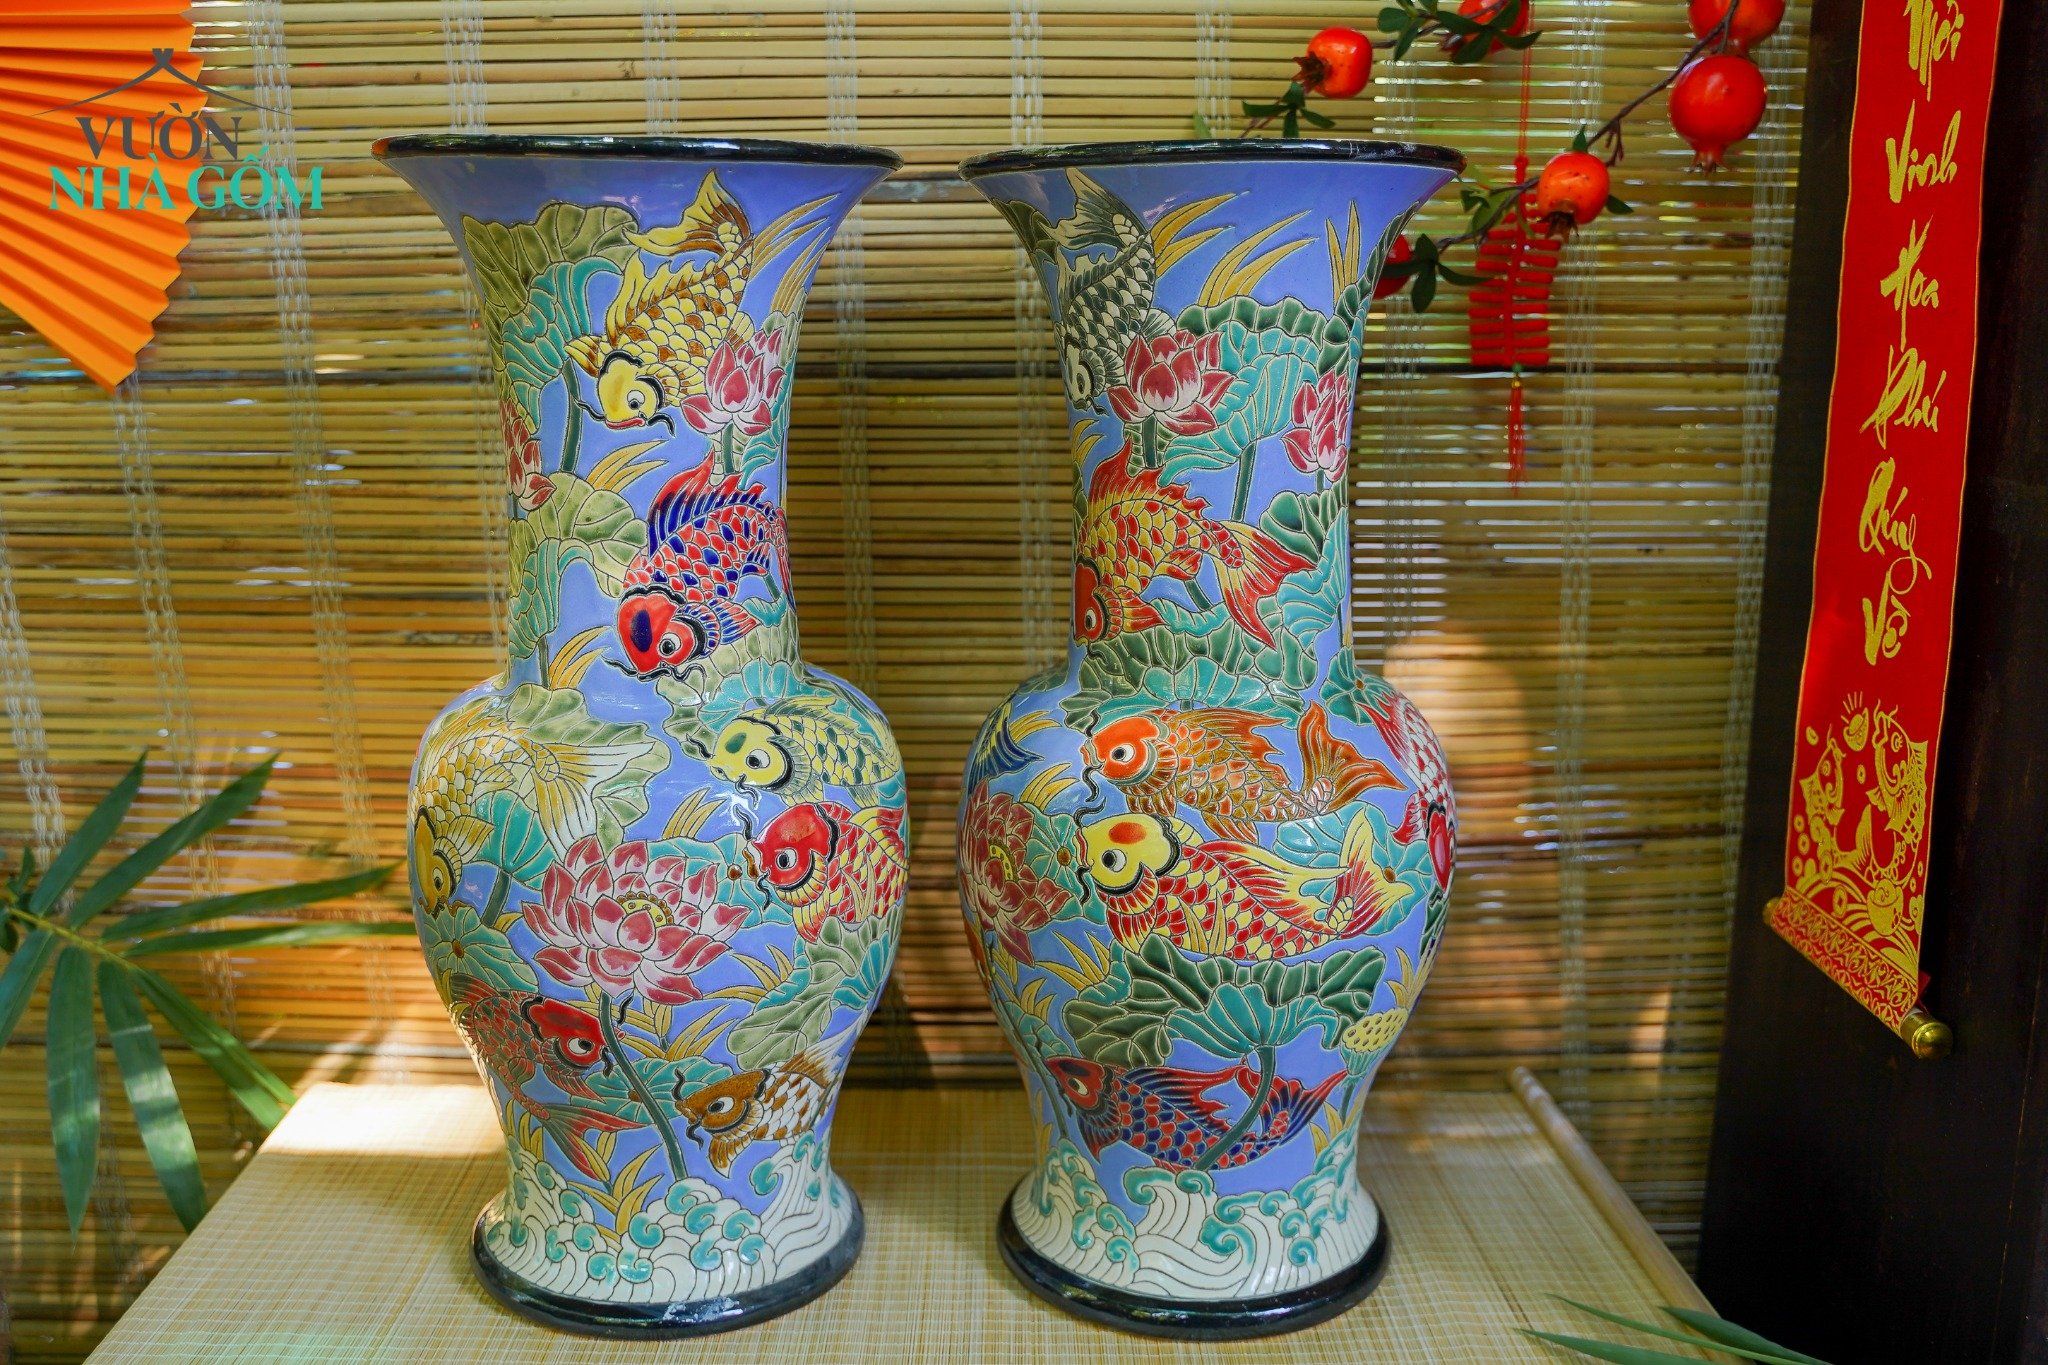  Bình gốm mỹ nghệ, chạm khắc hoa sen và cá, miệng loe, gốm thủ công Nam Bộ, C60 cm 